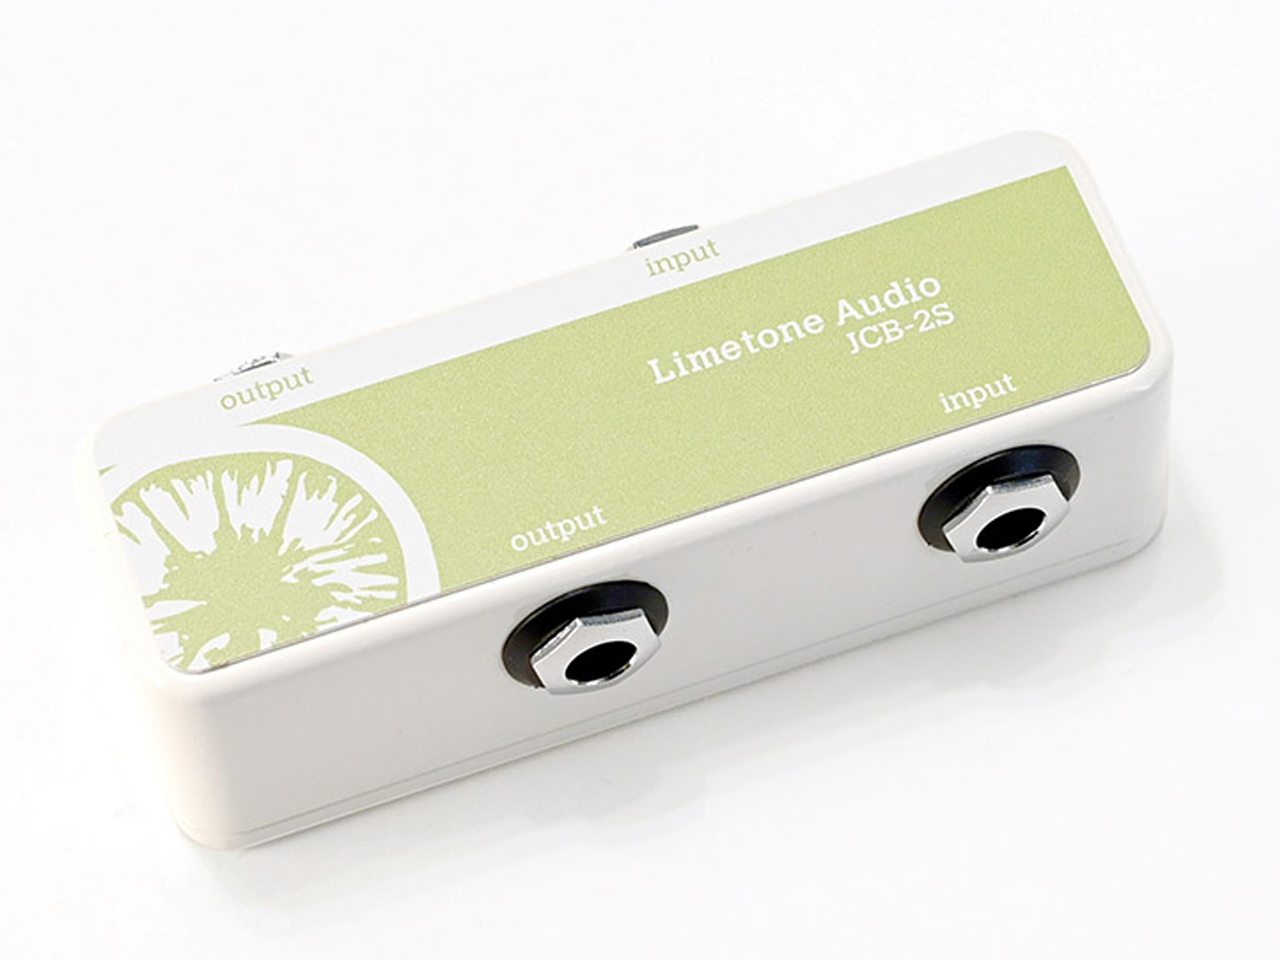 【即納可能】Limetone Audio JCB-2S / Green (ジャンクションボックス) お茶の水駅前店(東京)